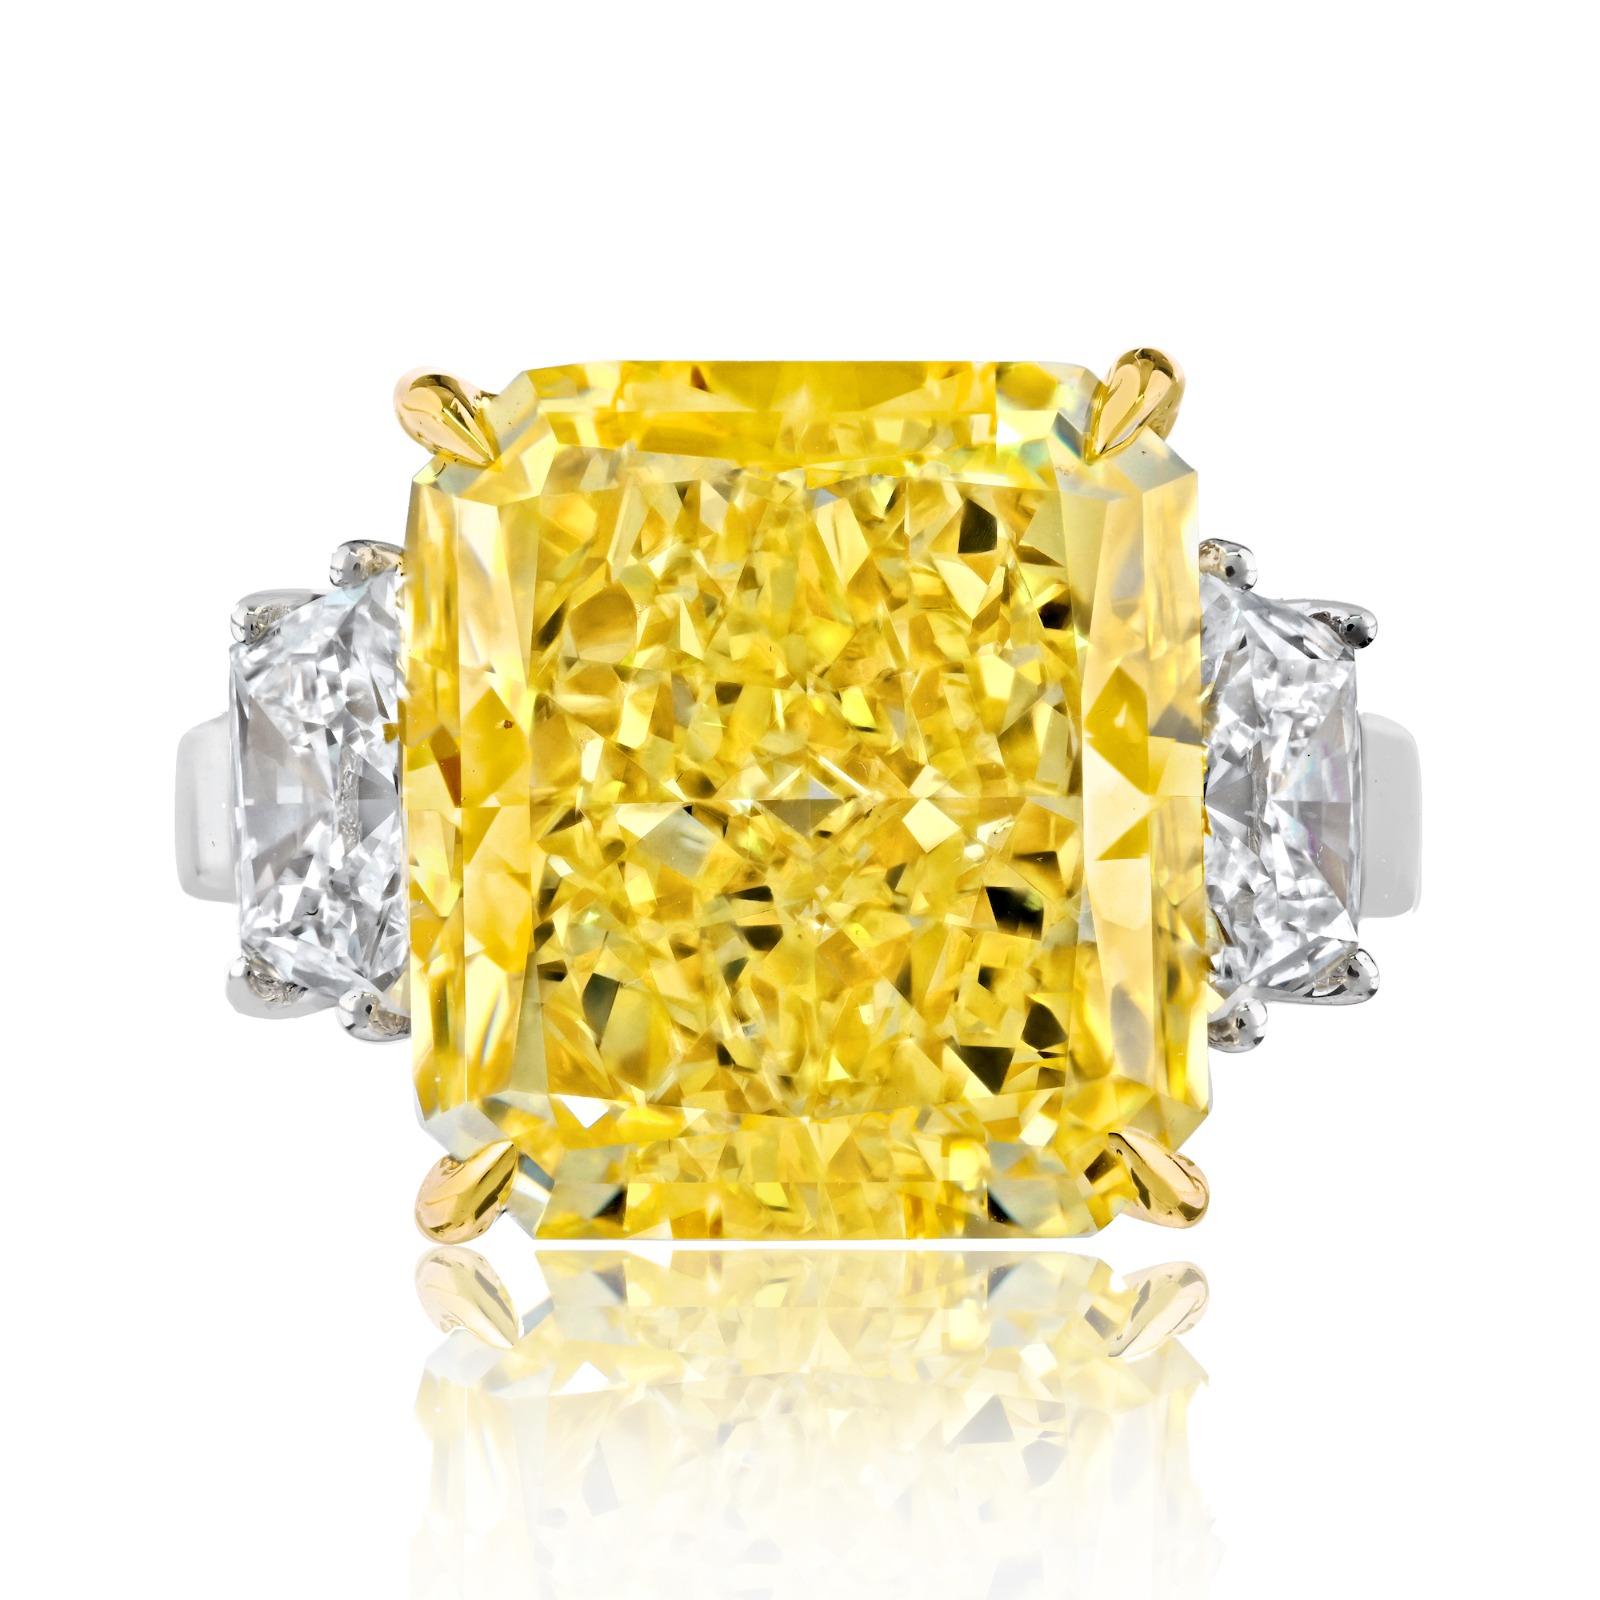 Dieser Diamantring ist wirklich ein außergewöhnliches Schmuckstück, das einen ganz besonderen Fancy Yellow Vivid Radiant Cut Diamanten enthält. Dieser Diamant hat einen bemerkenswerten Wert von 12 Karat und eine tiefgelbe Farbe. 

Der Ring ist in